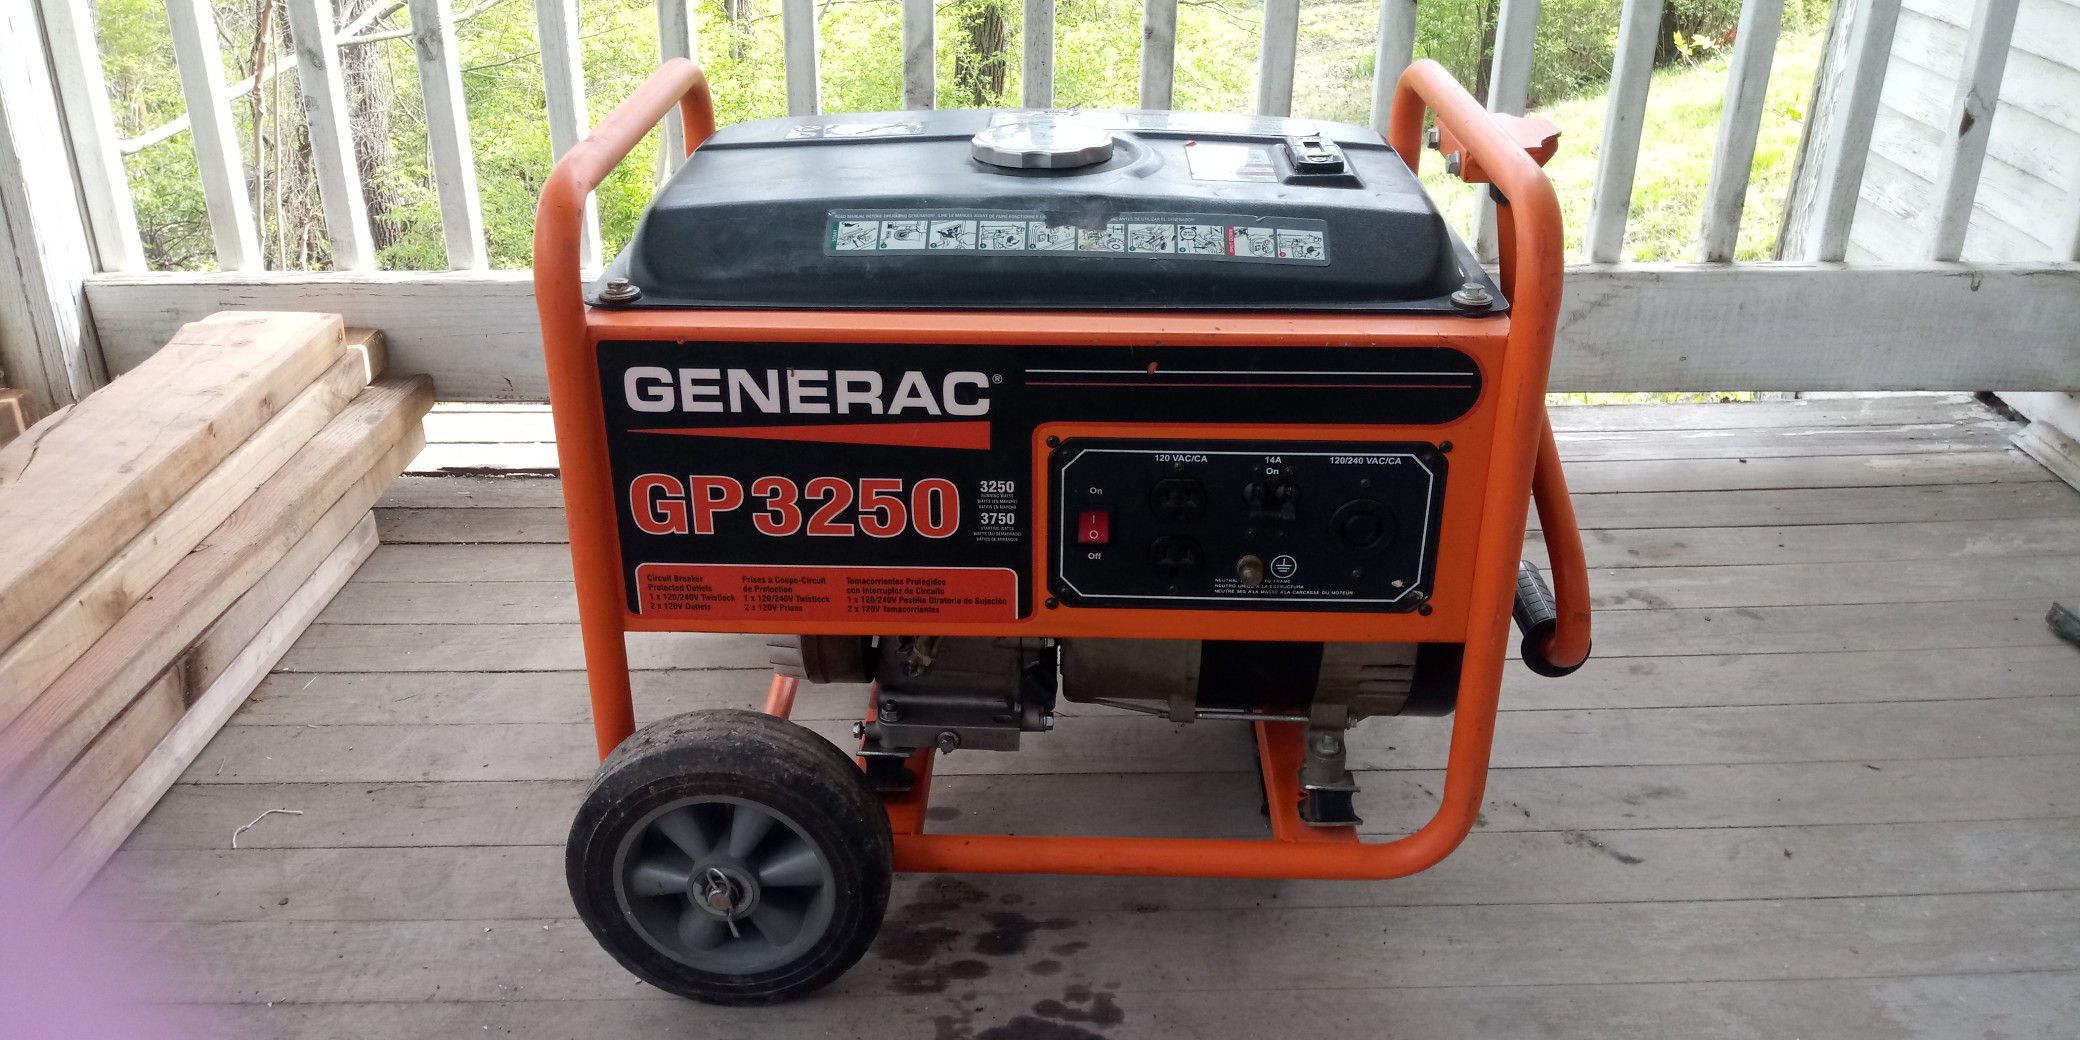 Generac 3250 gas generator looks & runs great !